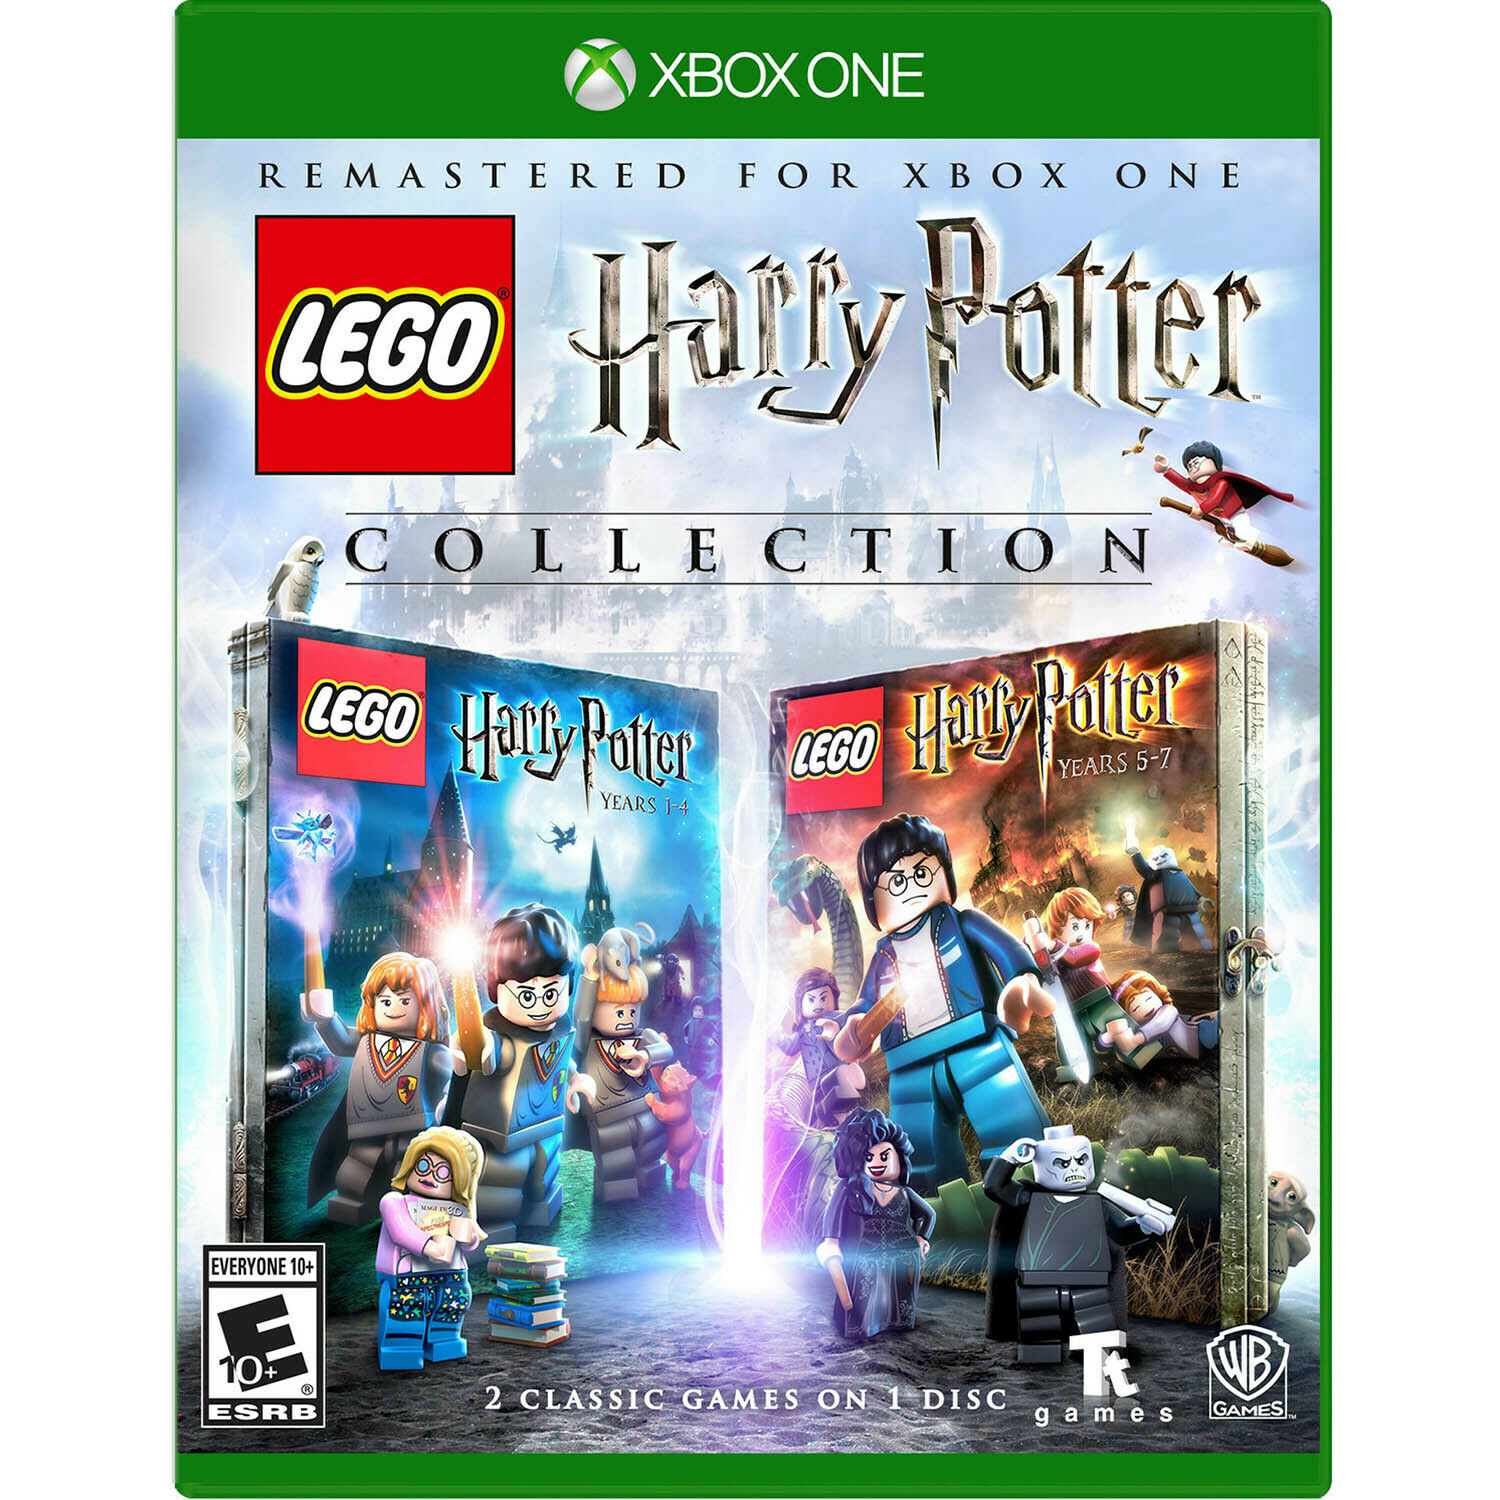 Игра LEGO Harry Potter Collection для Xbox One